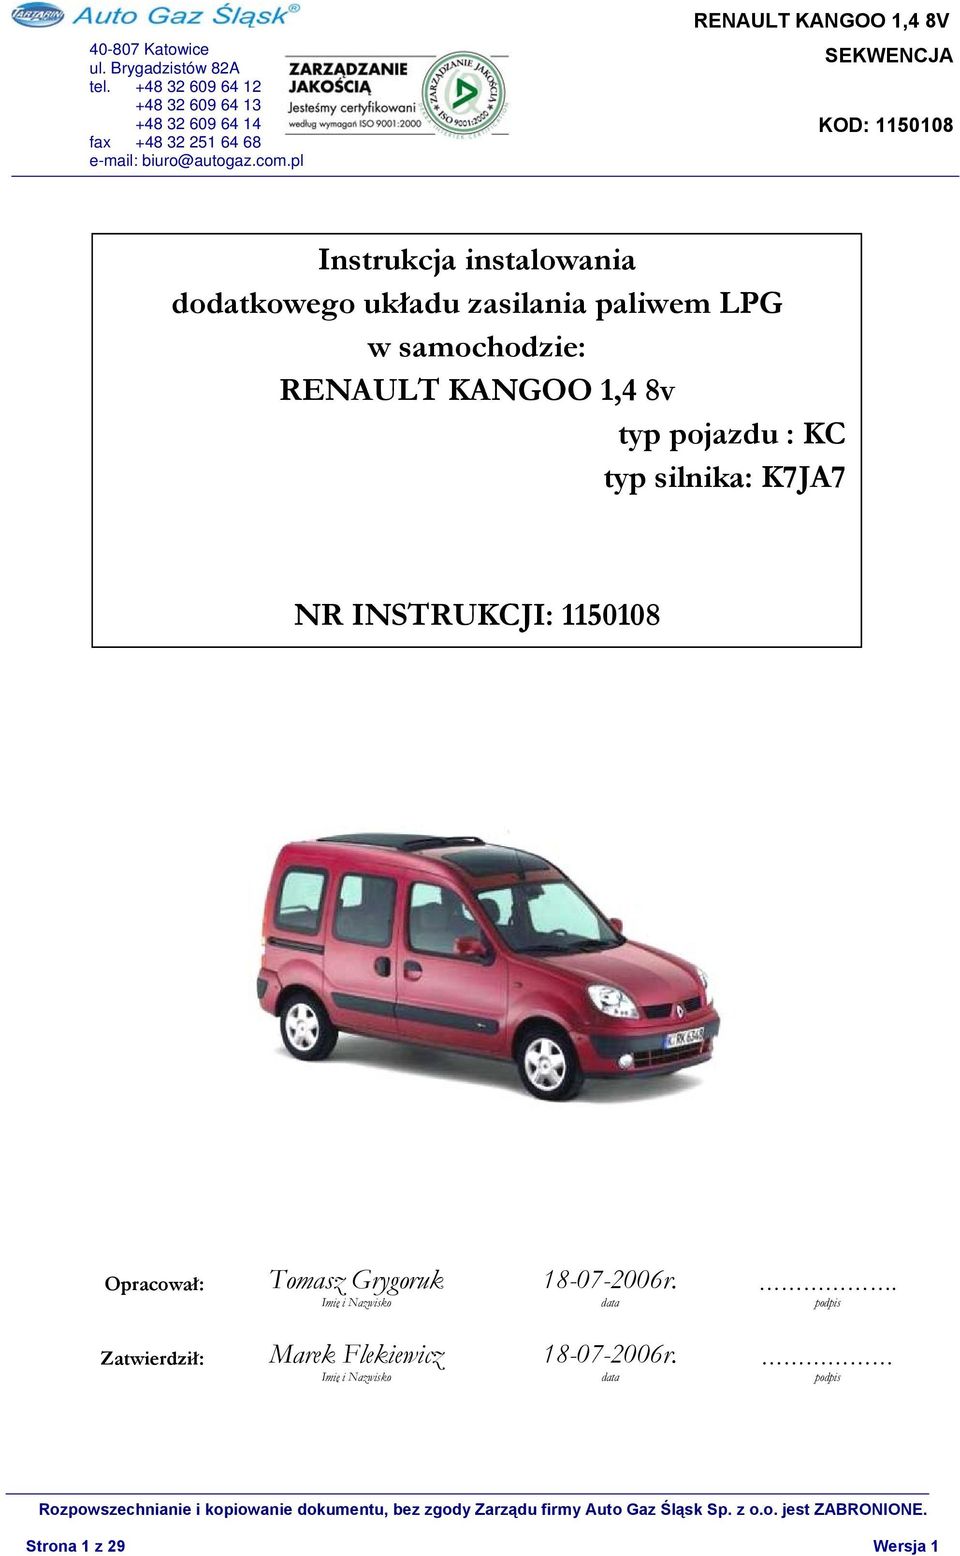 Instrukcja Instalowania Dodatkowego Układu Zasilania Paliwem Lpg W Samochodzie: Renault Kangoo 1,4 8V Typ Pojazdu : Kc Typ Silnika: K7Ja7 - Pdf Darmowe Pobieranie